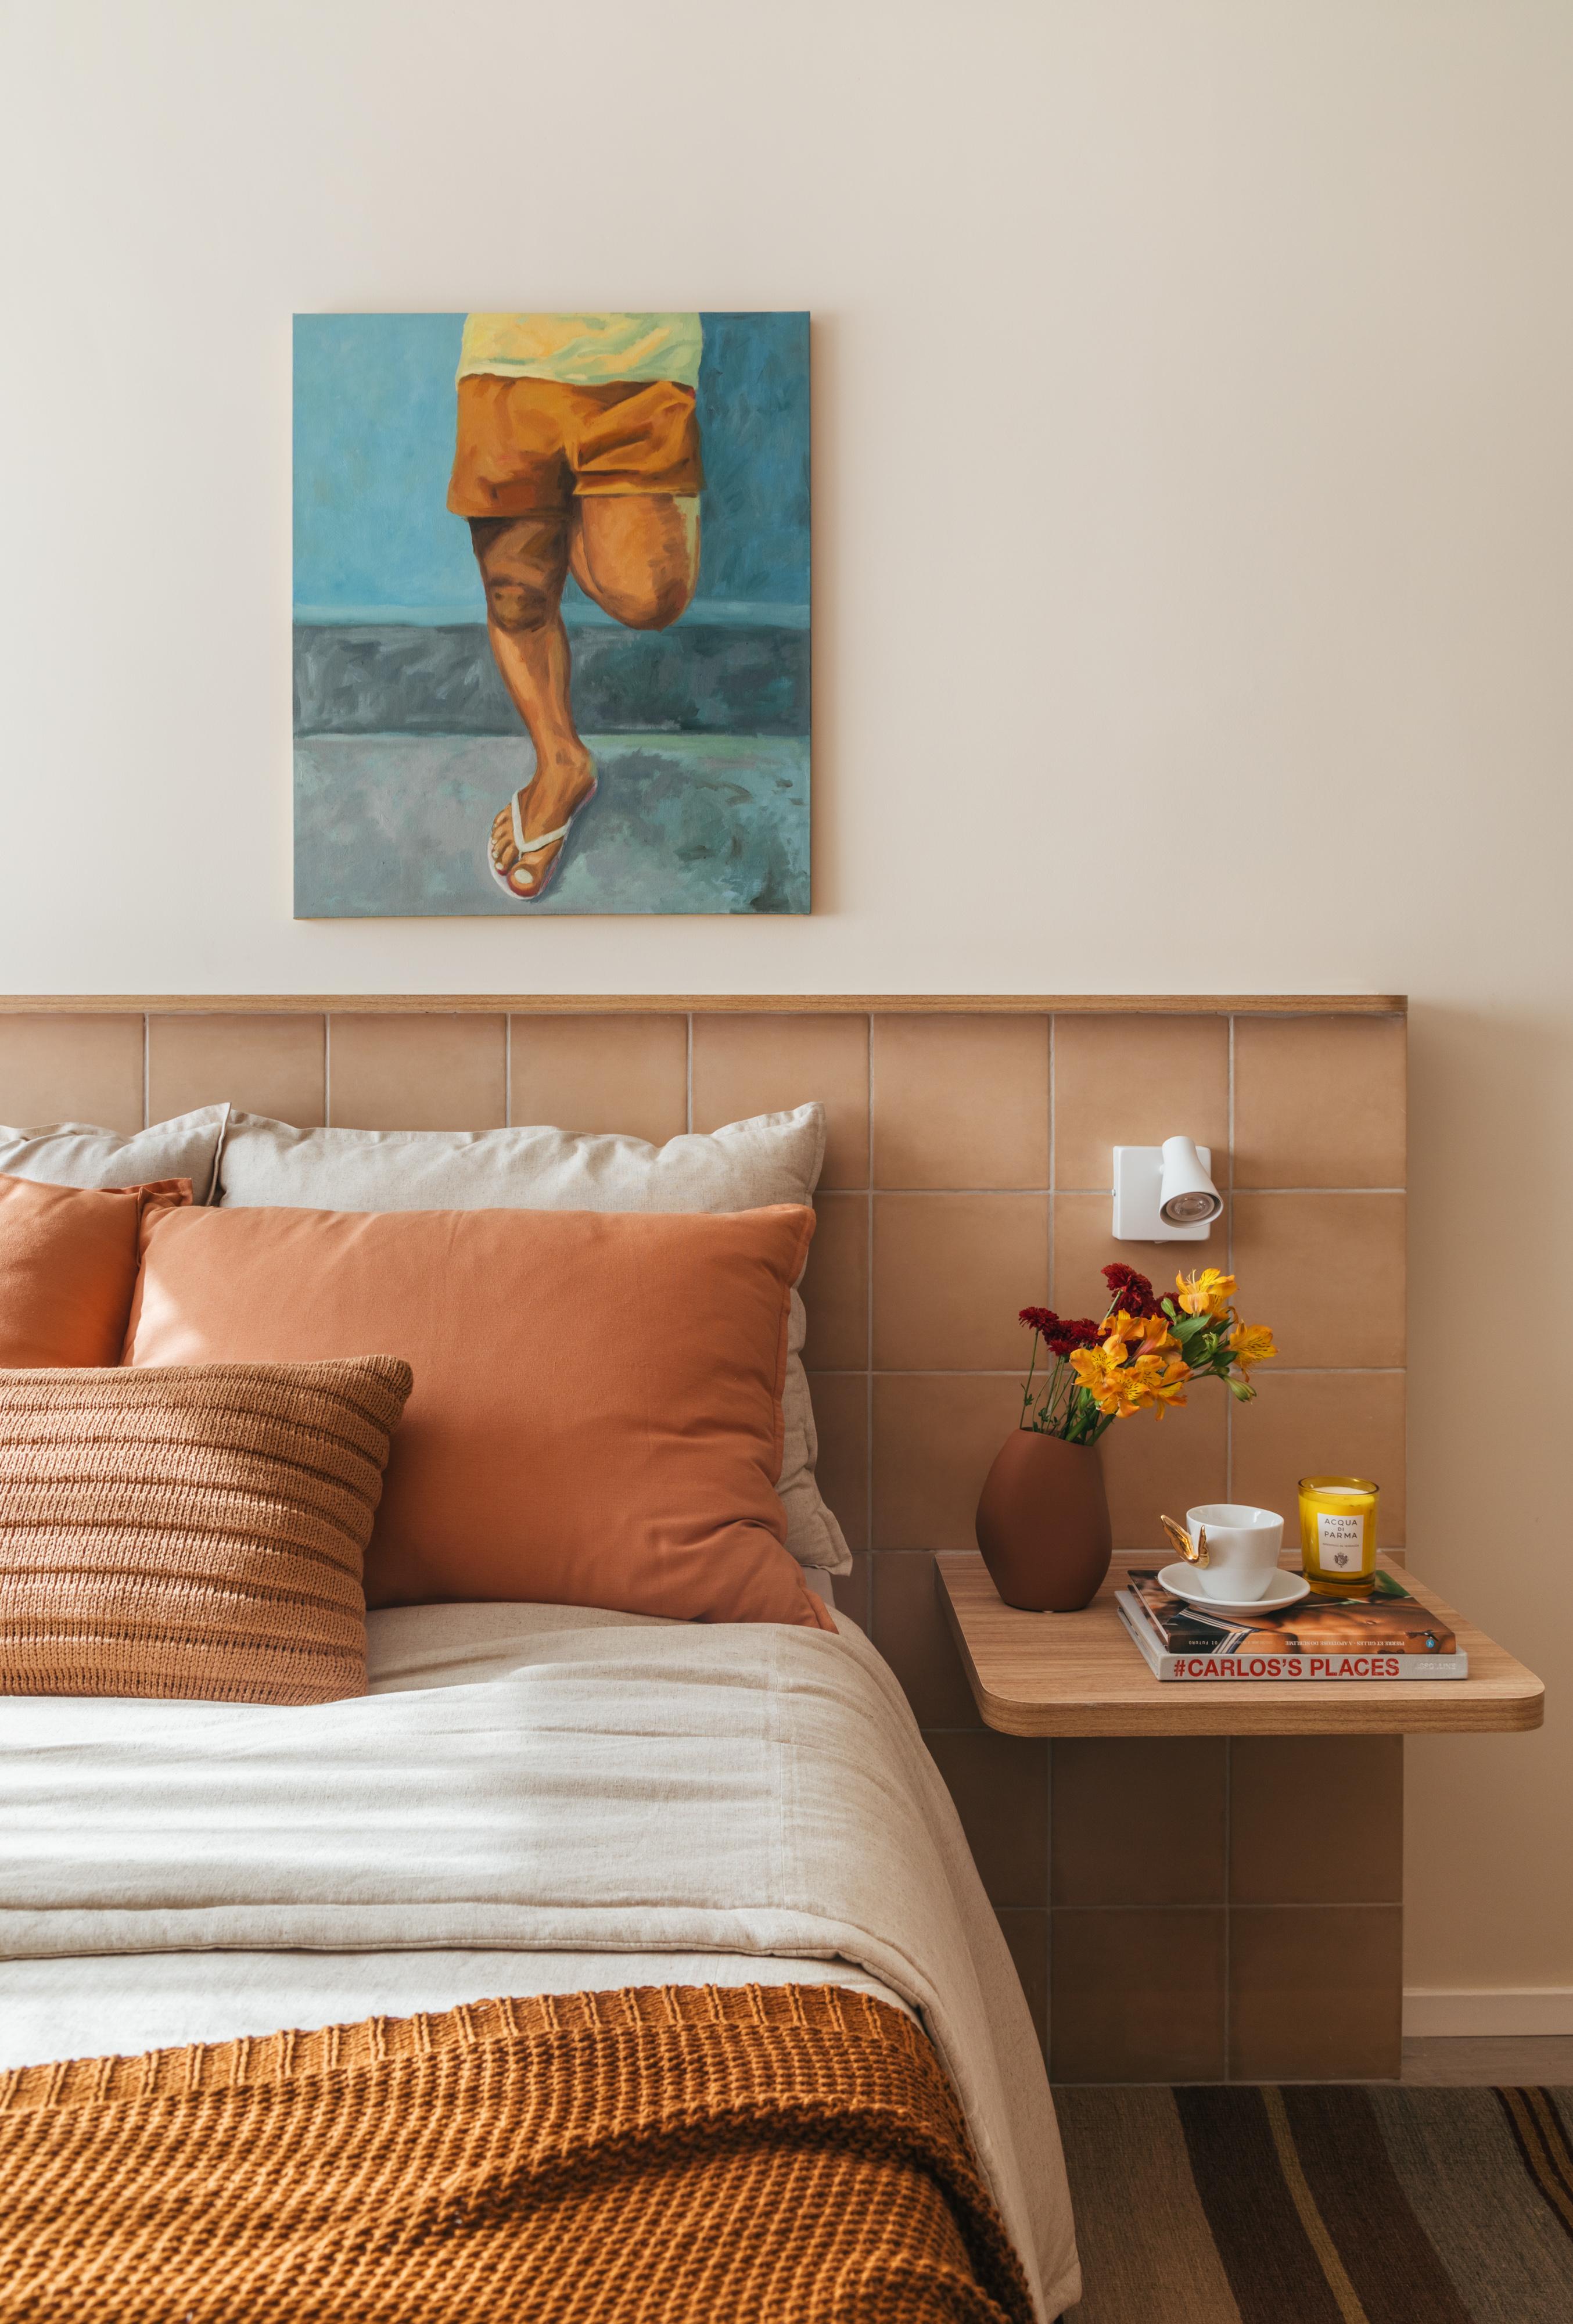 Projeto de Rodolfo Consoli. Na foto, cama com cabeceira de azulejos e drywall.